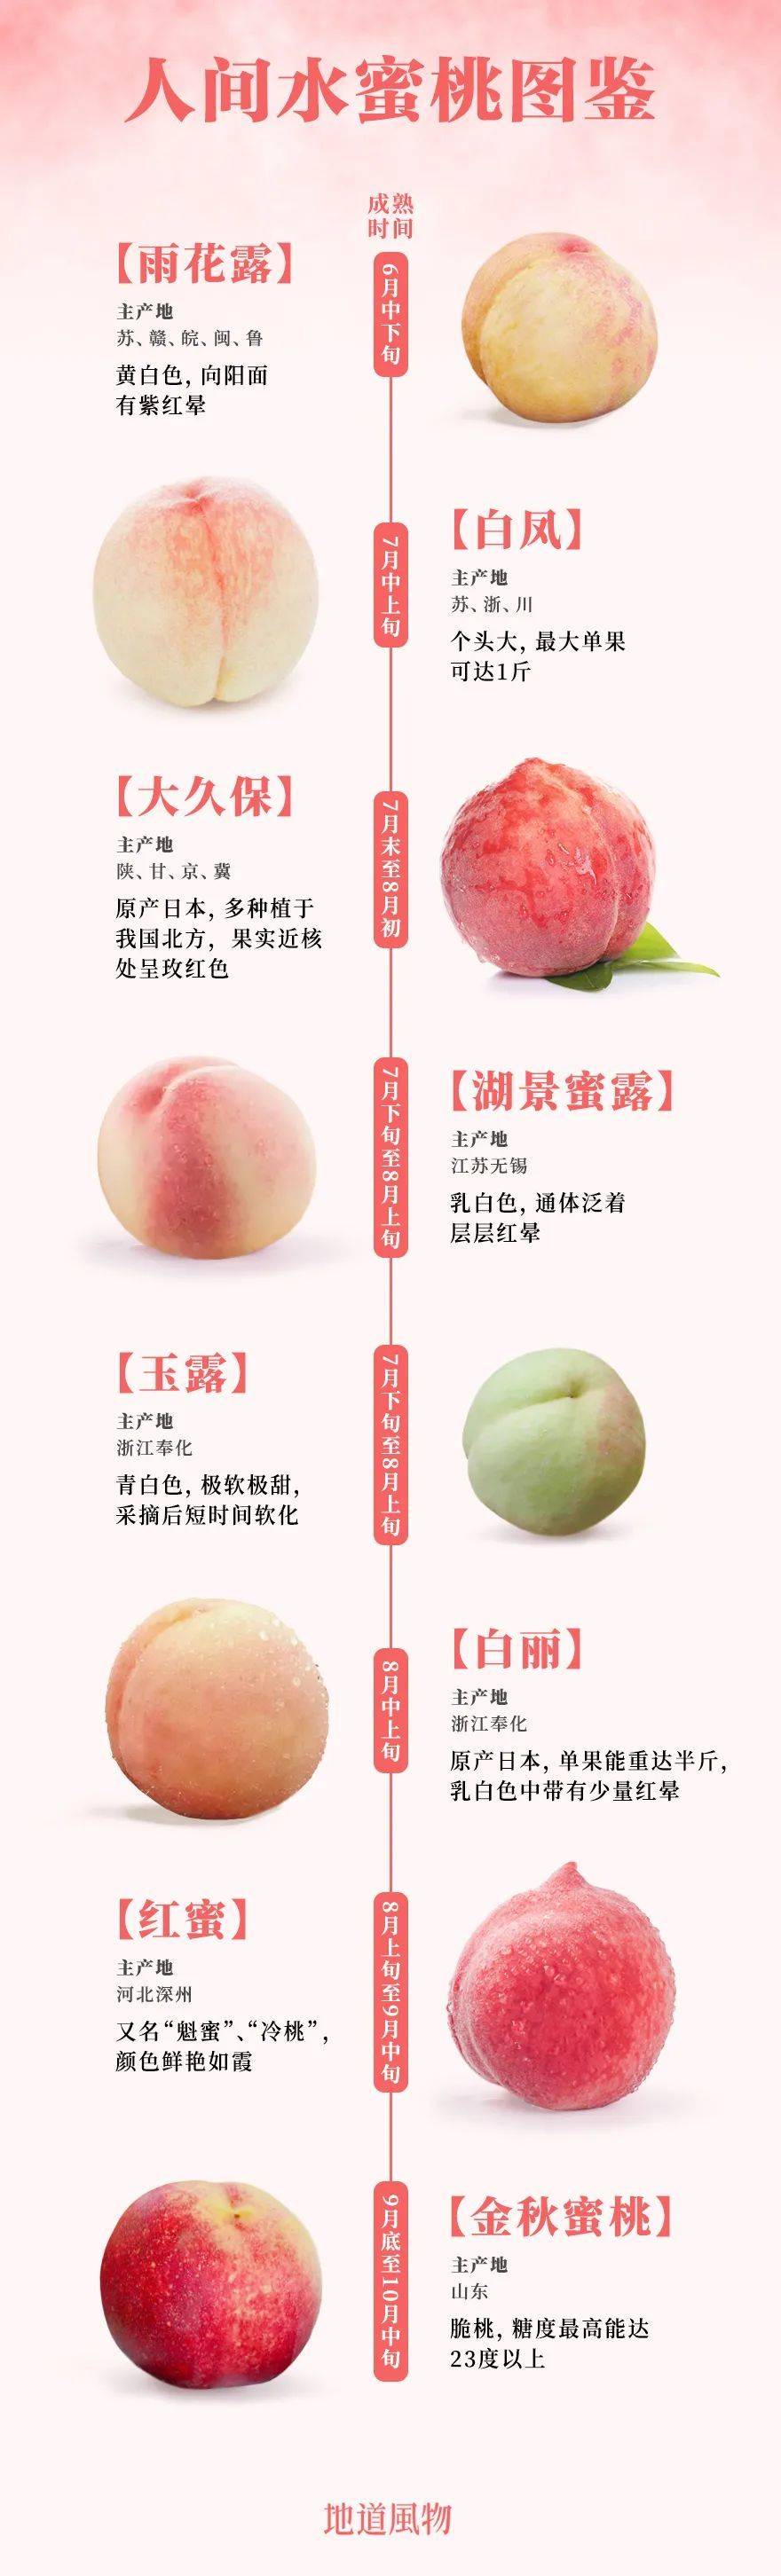 ▲ 如今市面上部分知名的蜜桃和水蜜桃（其中金秋蜜桃为脆桃）。设计/刘航<br>